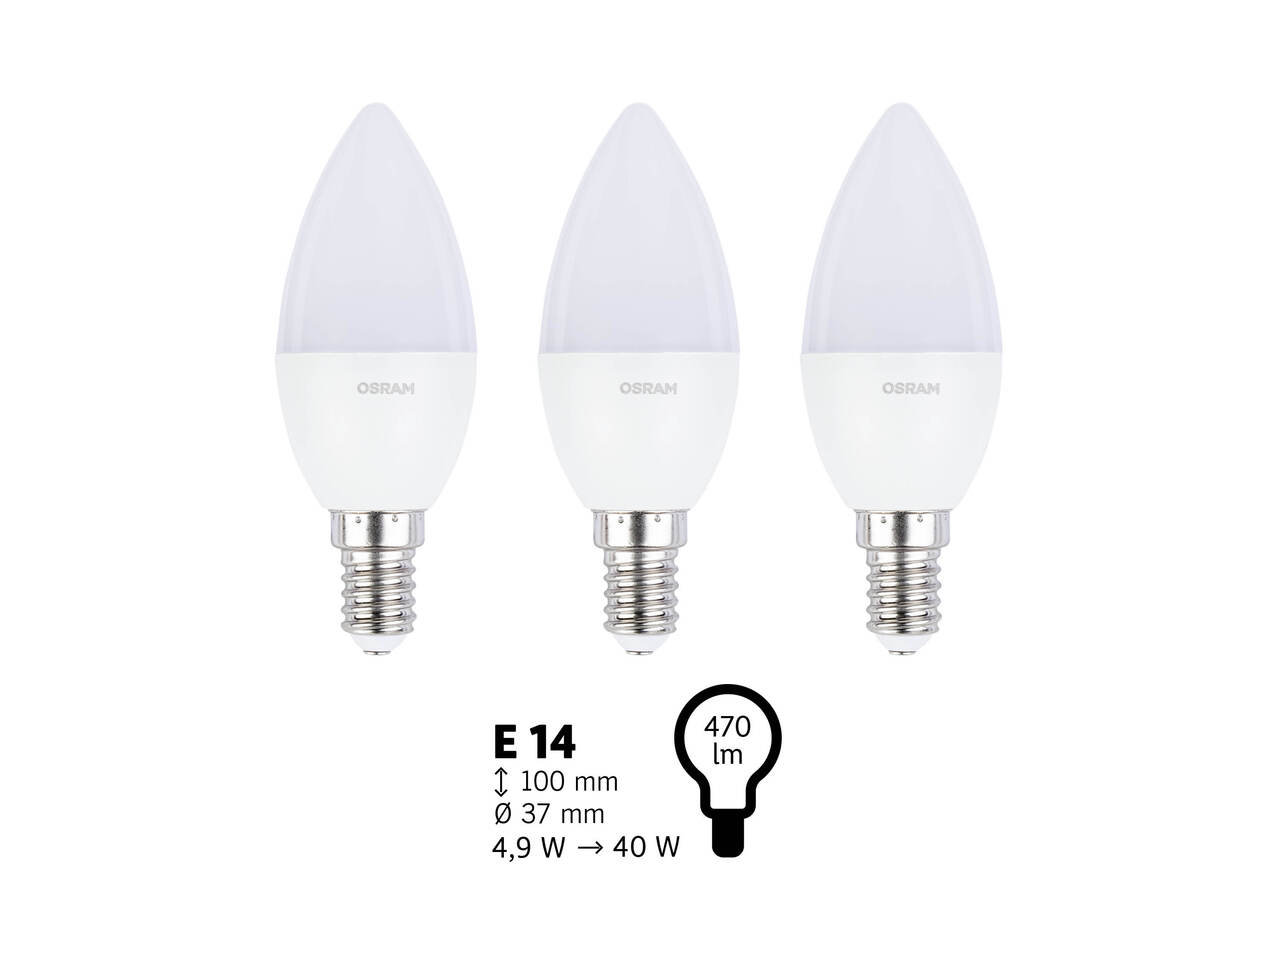 OSRAM® Żarówki LED, 3 szt. , cena 19,99 PLN 
OSRAM® Żarówki LED, 3 szt. ...